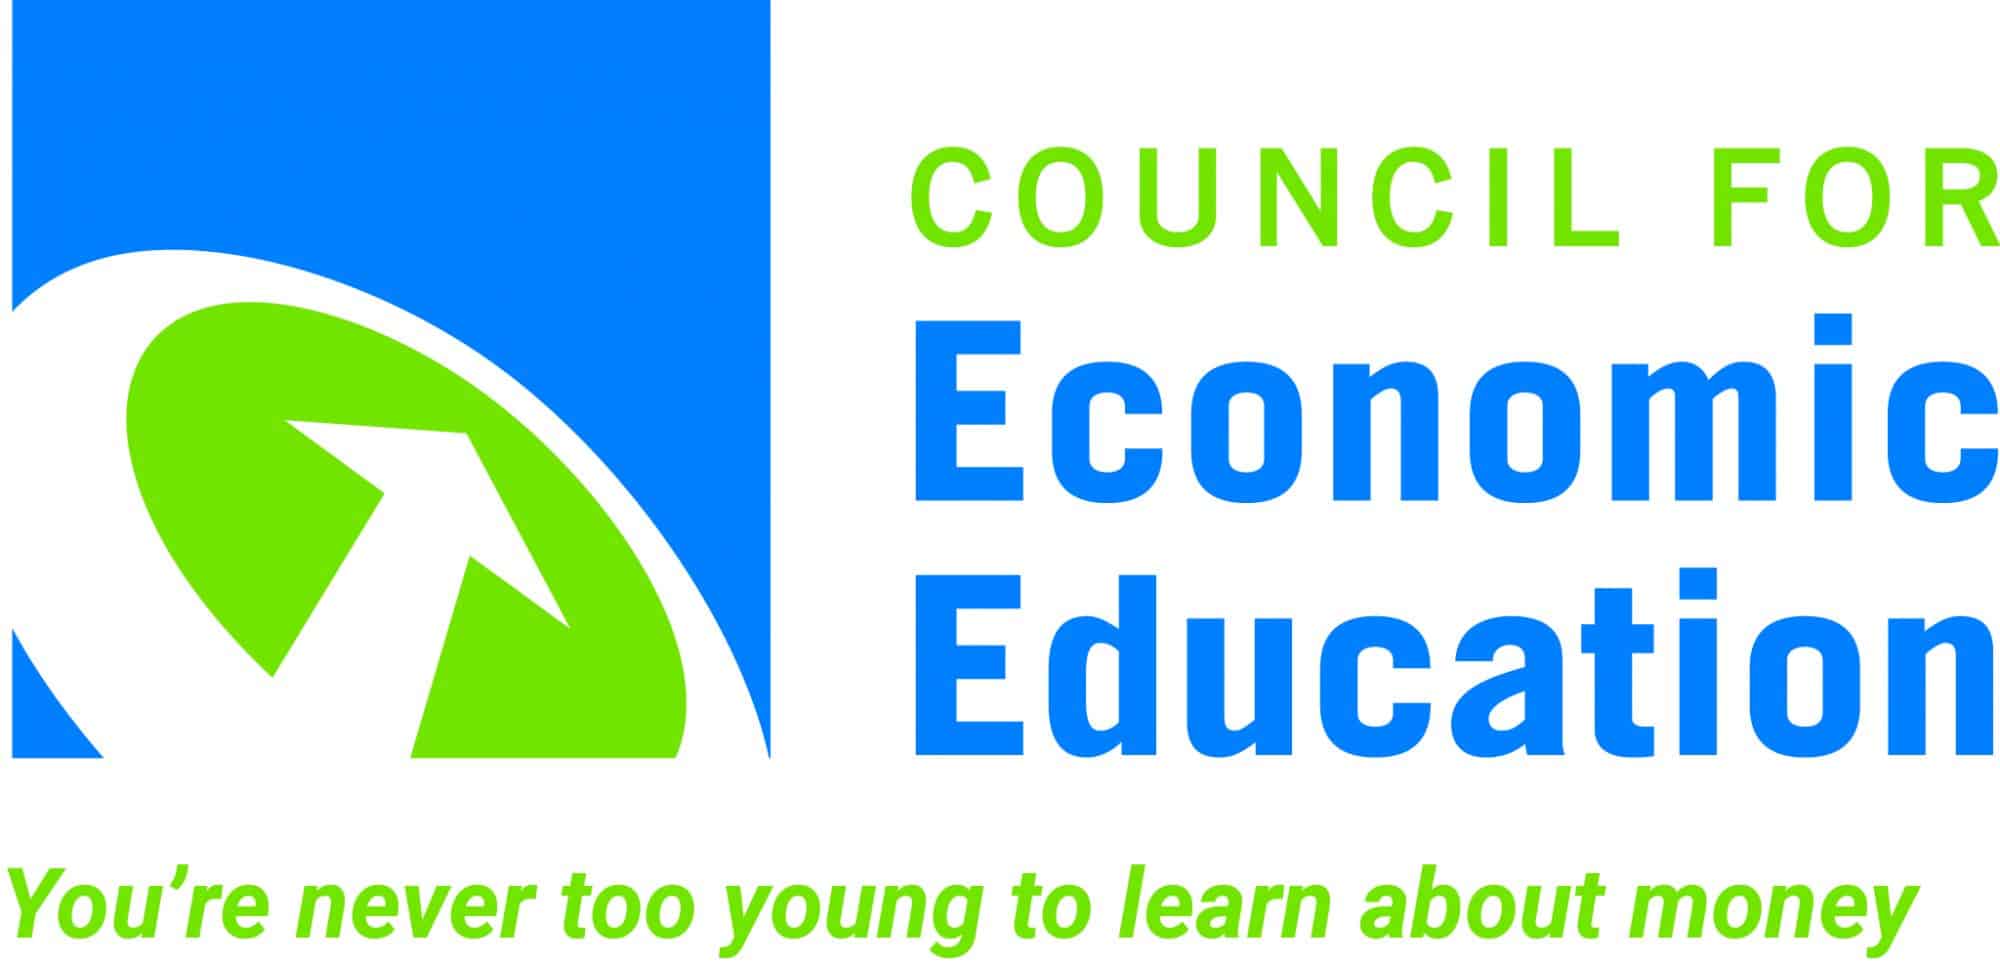 Council-for-Economic-Education-logo